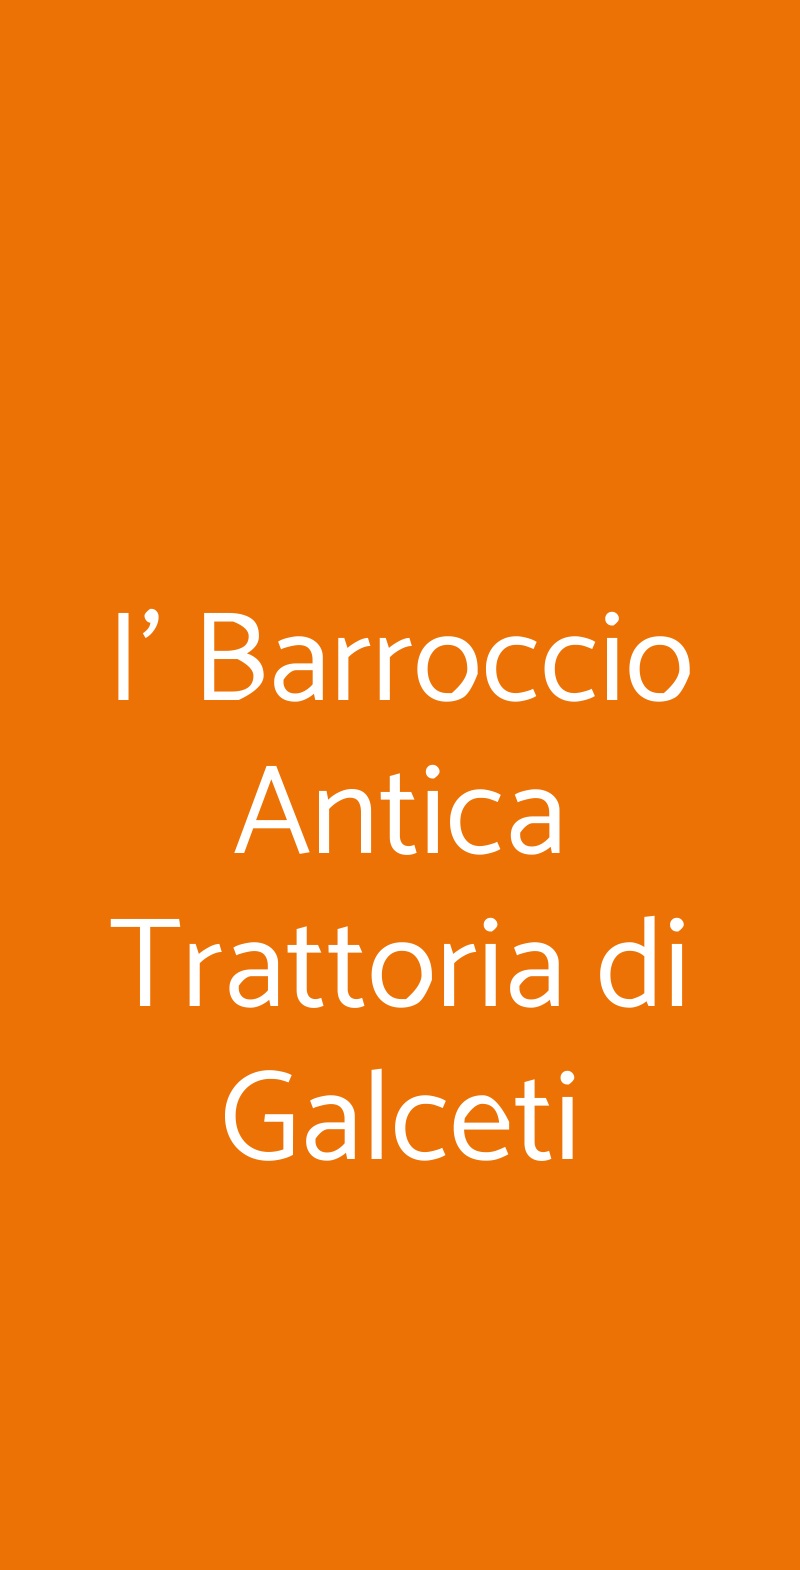 I' Barroccio Antica Trattoria di Galceti Prato menù 1 pagina